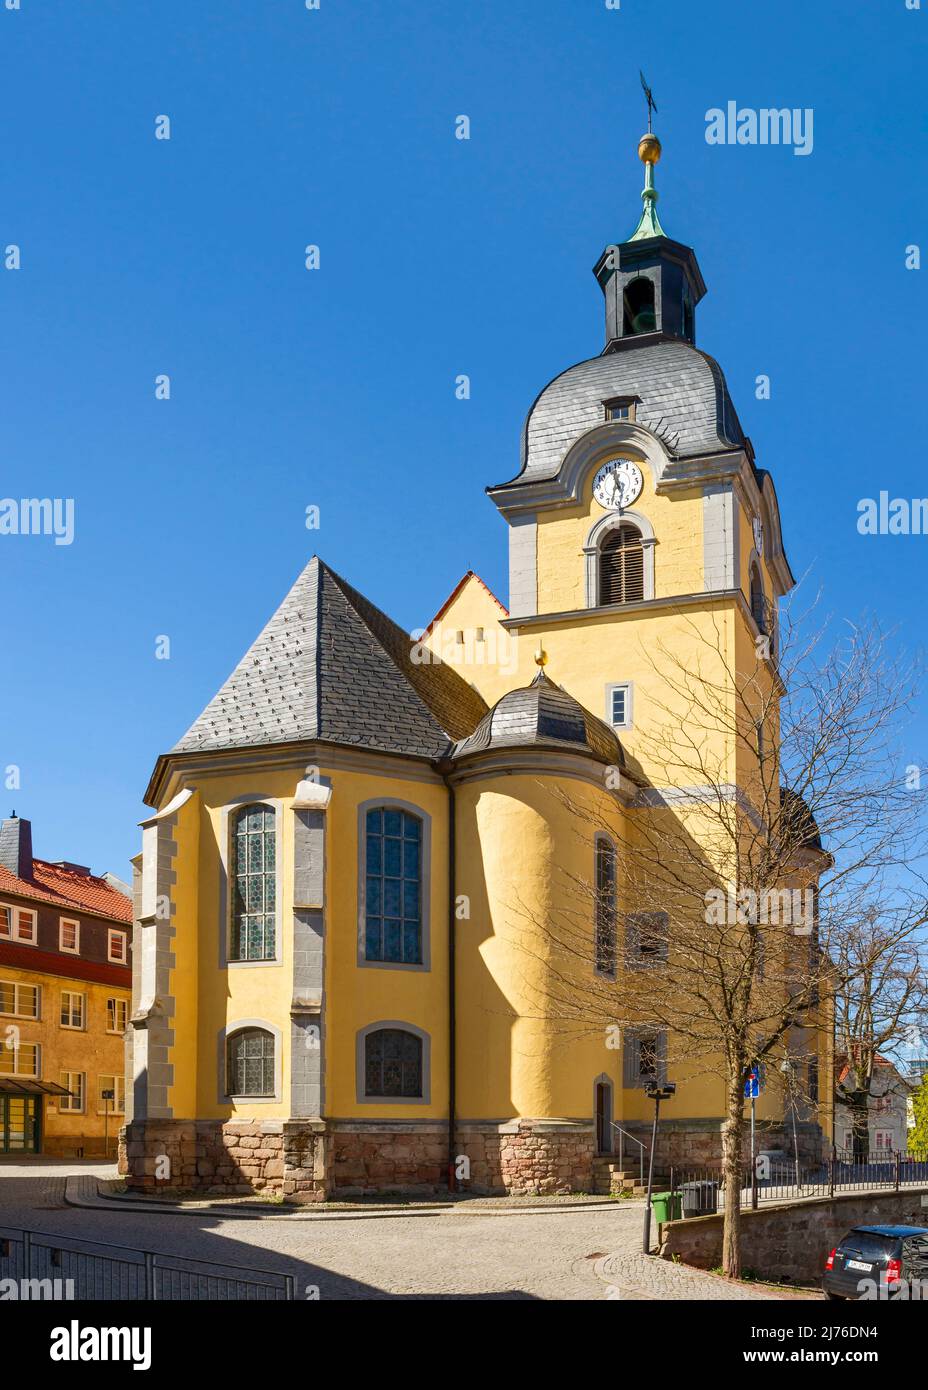 Deutschland, Suhl, St. Mary's Lutherische Kirche ist die älteste Kirche in der Stadt Suhl. Die Kirche wurde zwischen 1487 und 1491 erbaut. Der Kirchturm hat einen quadratischen Grundrisplatz und eine walisische Kuppel. Stockfoto